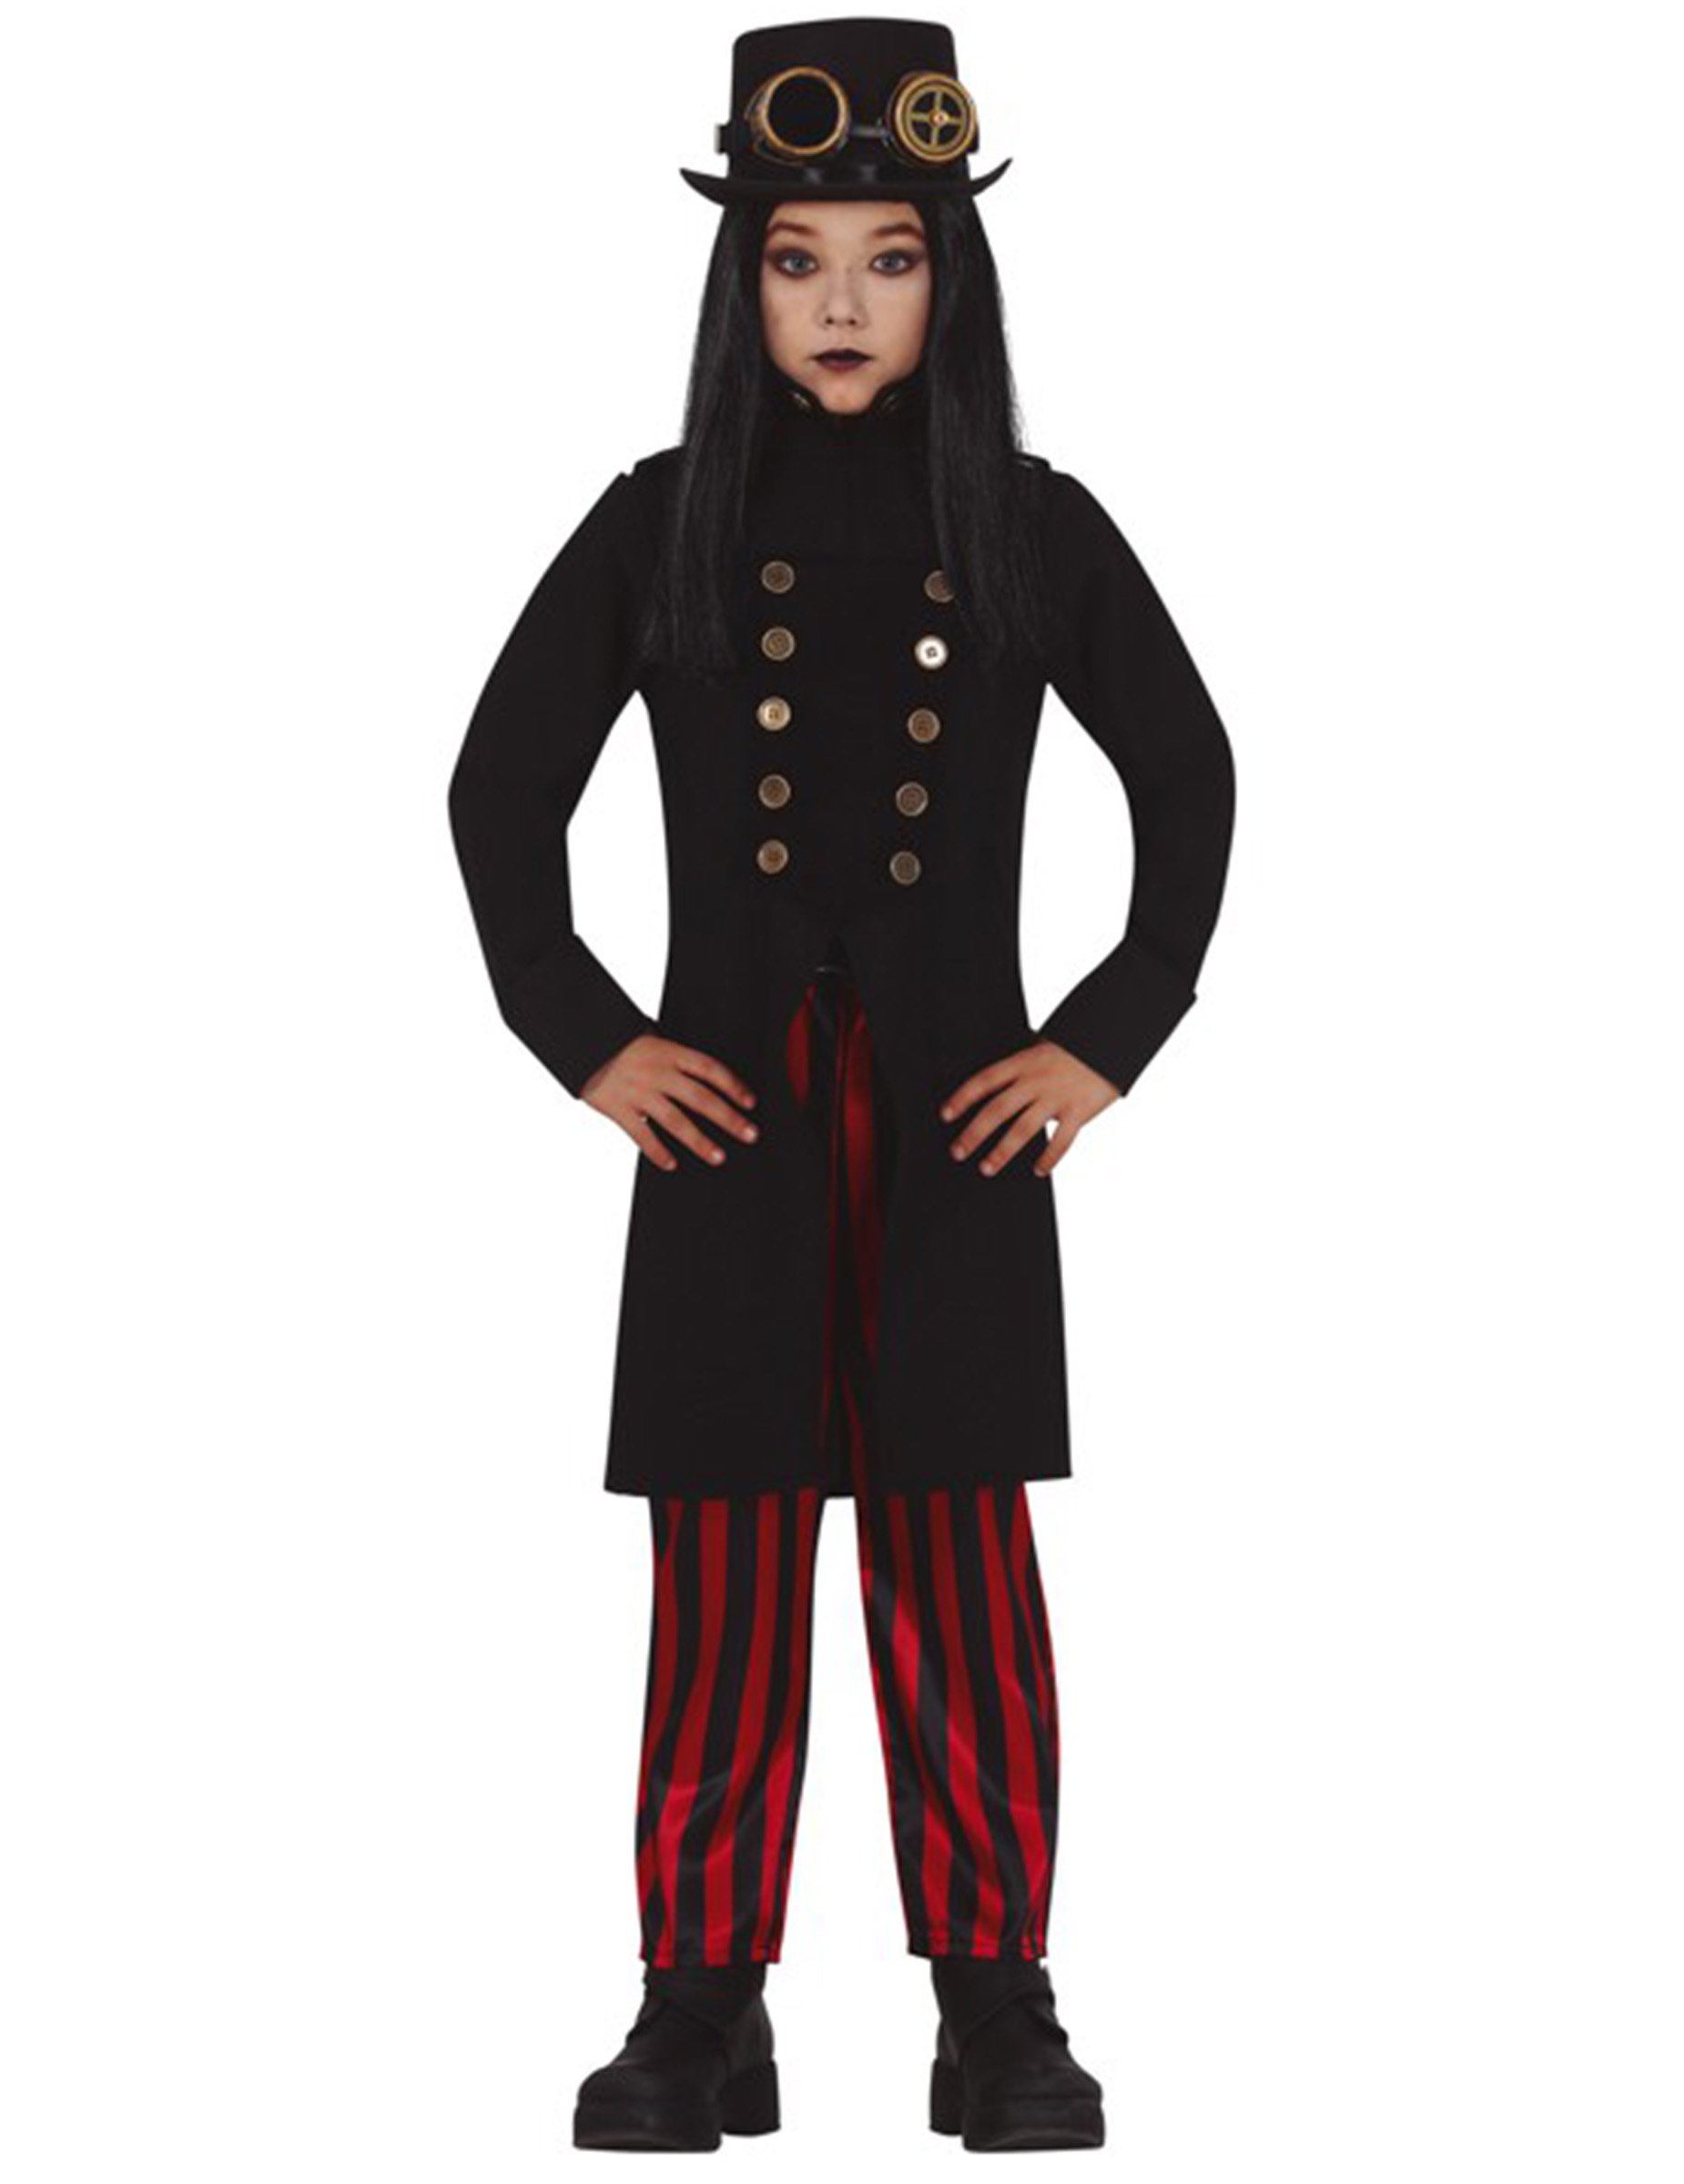 Miss Steampunk-Kostüm für Mädchen Halloween-Kostüm schwarz-rot von FIESTAS GUIRCA, S.L.